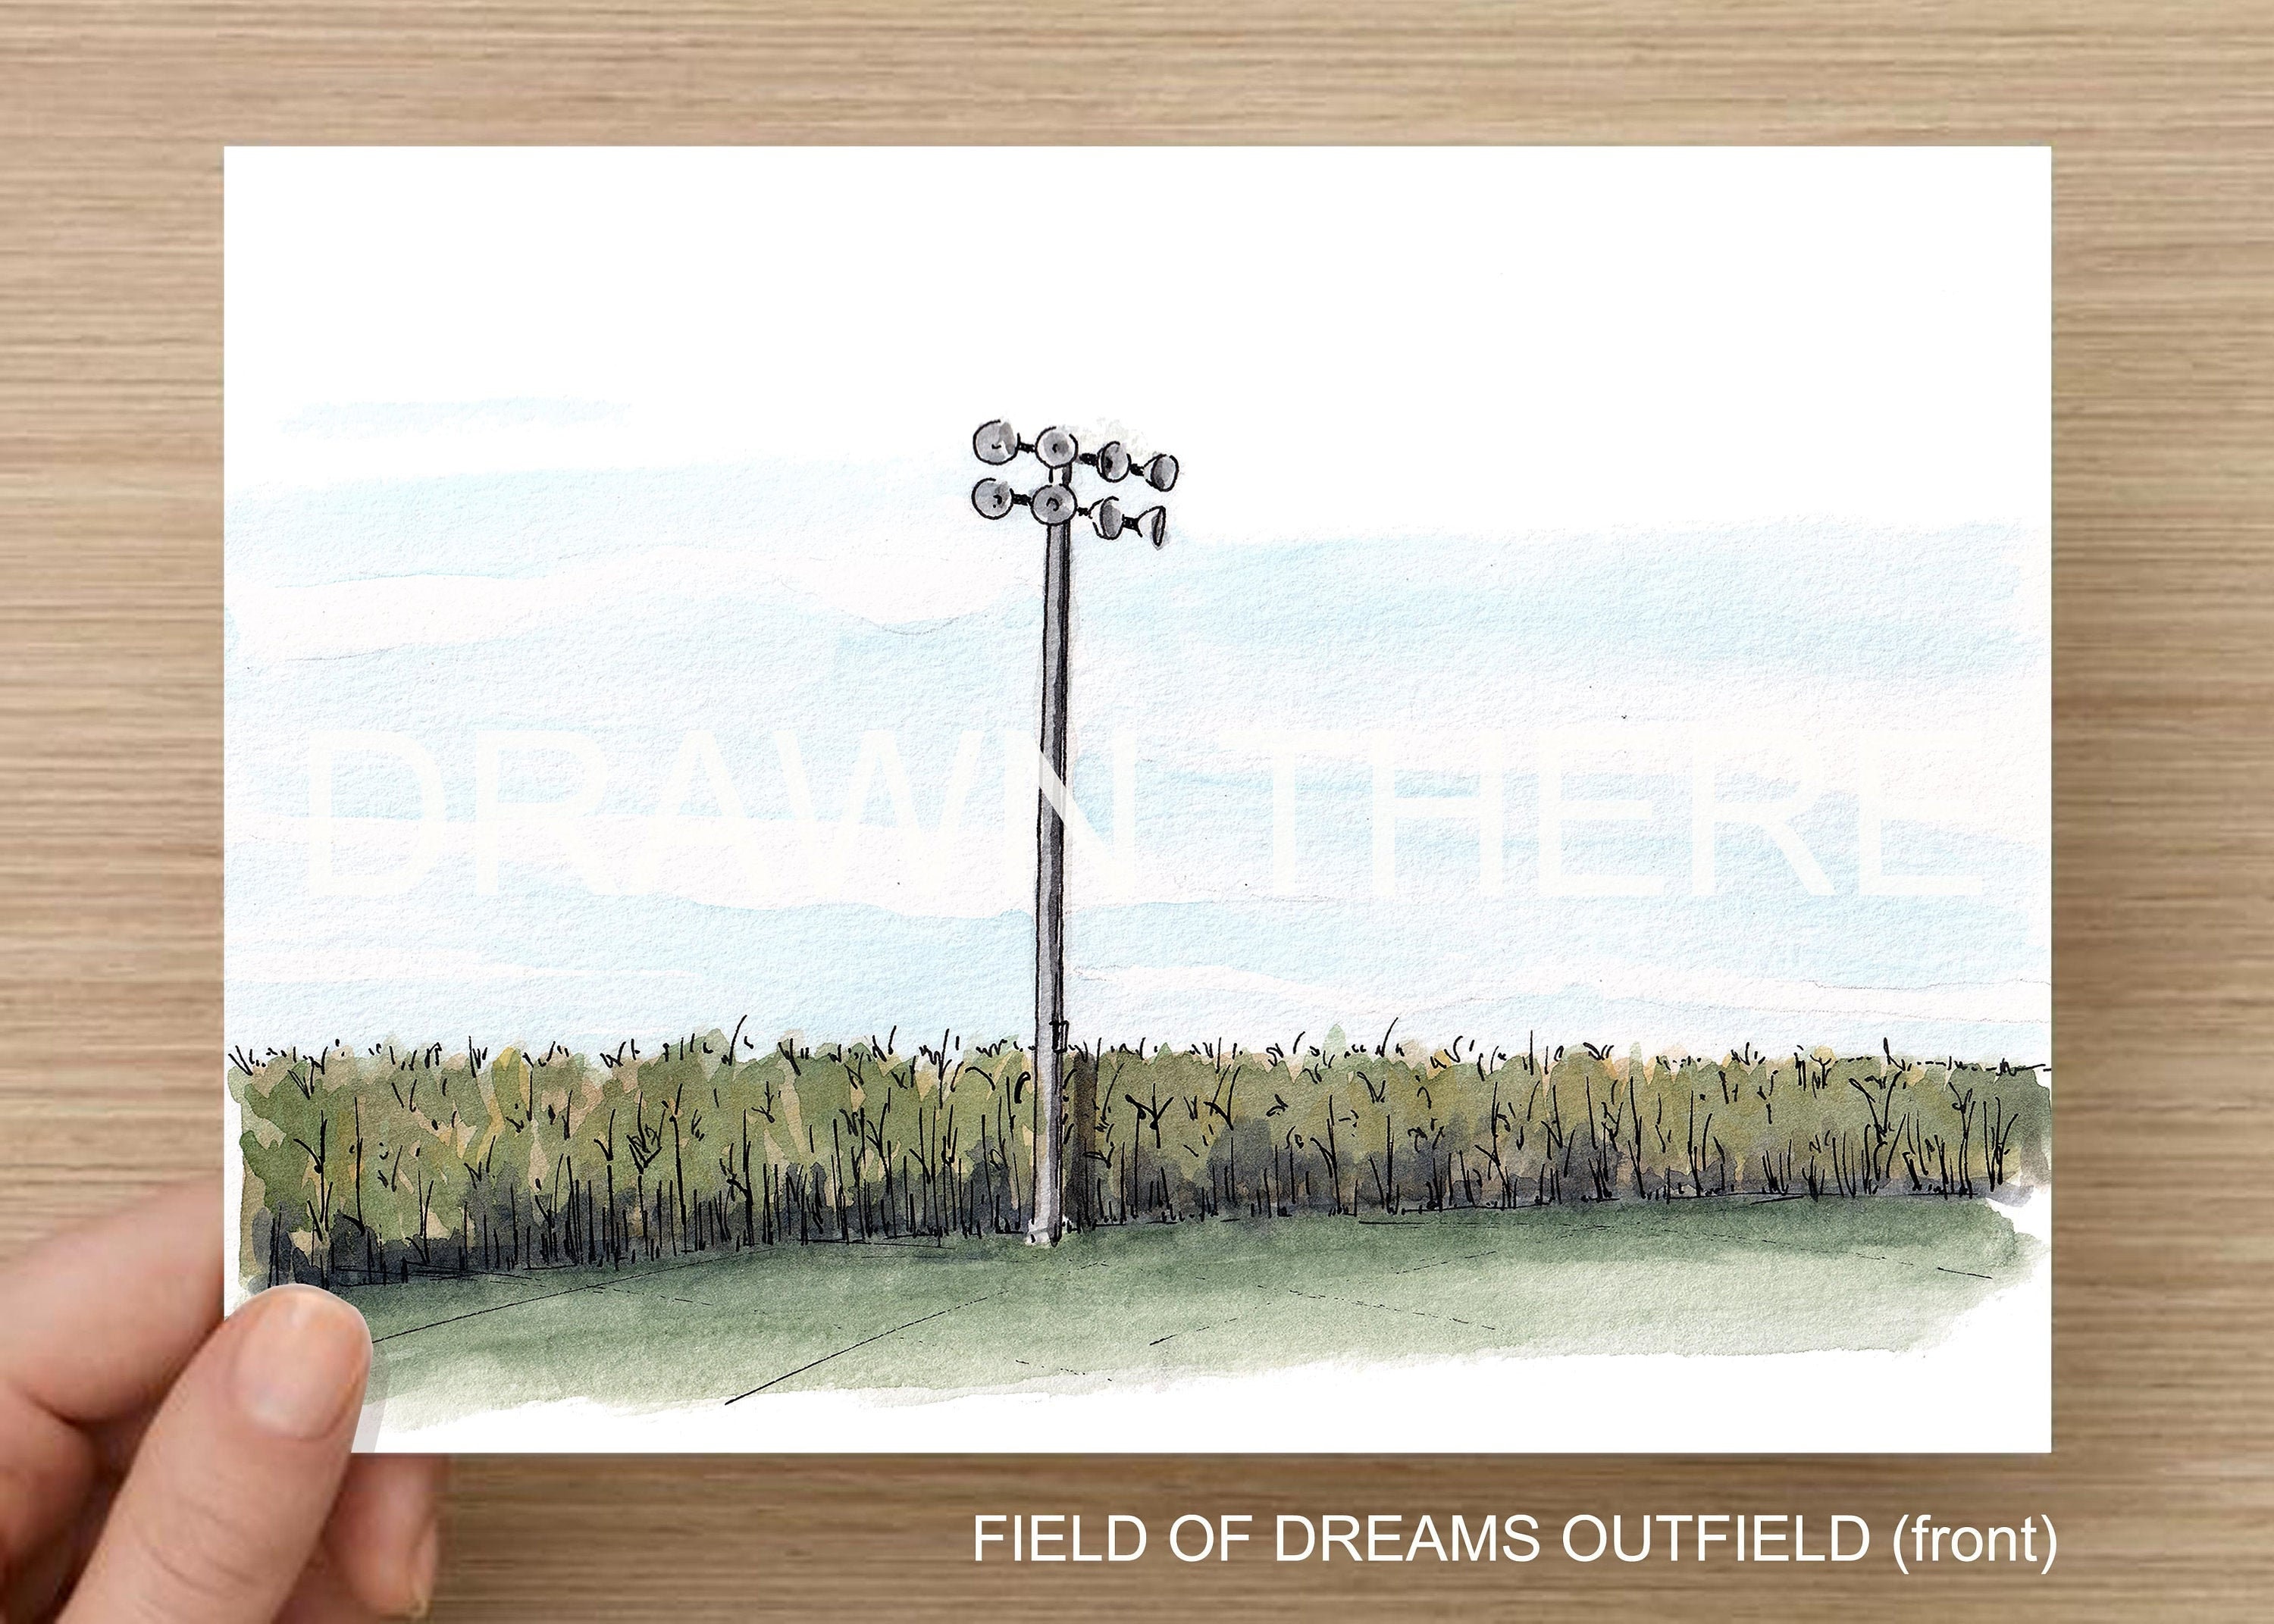 FIELD of DREAMS OUTFIELD - Baseball Field, Iowa, Shoeless Joe